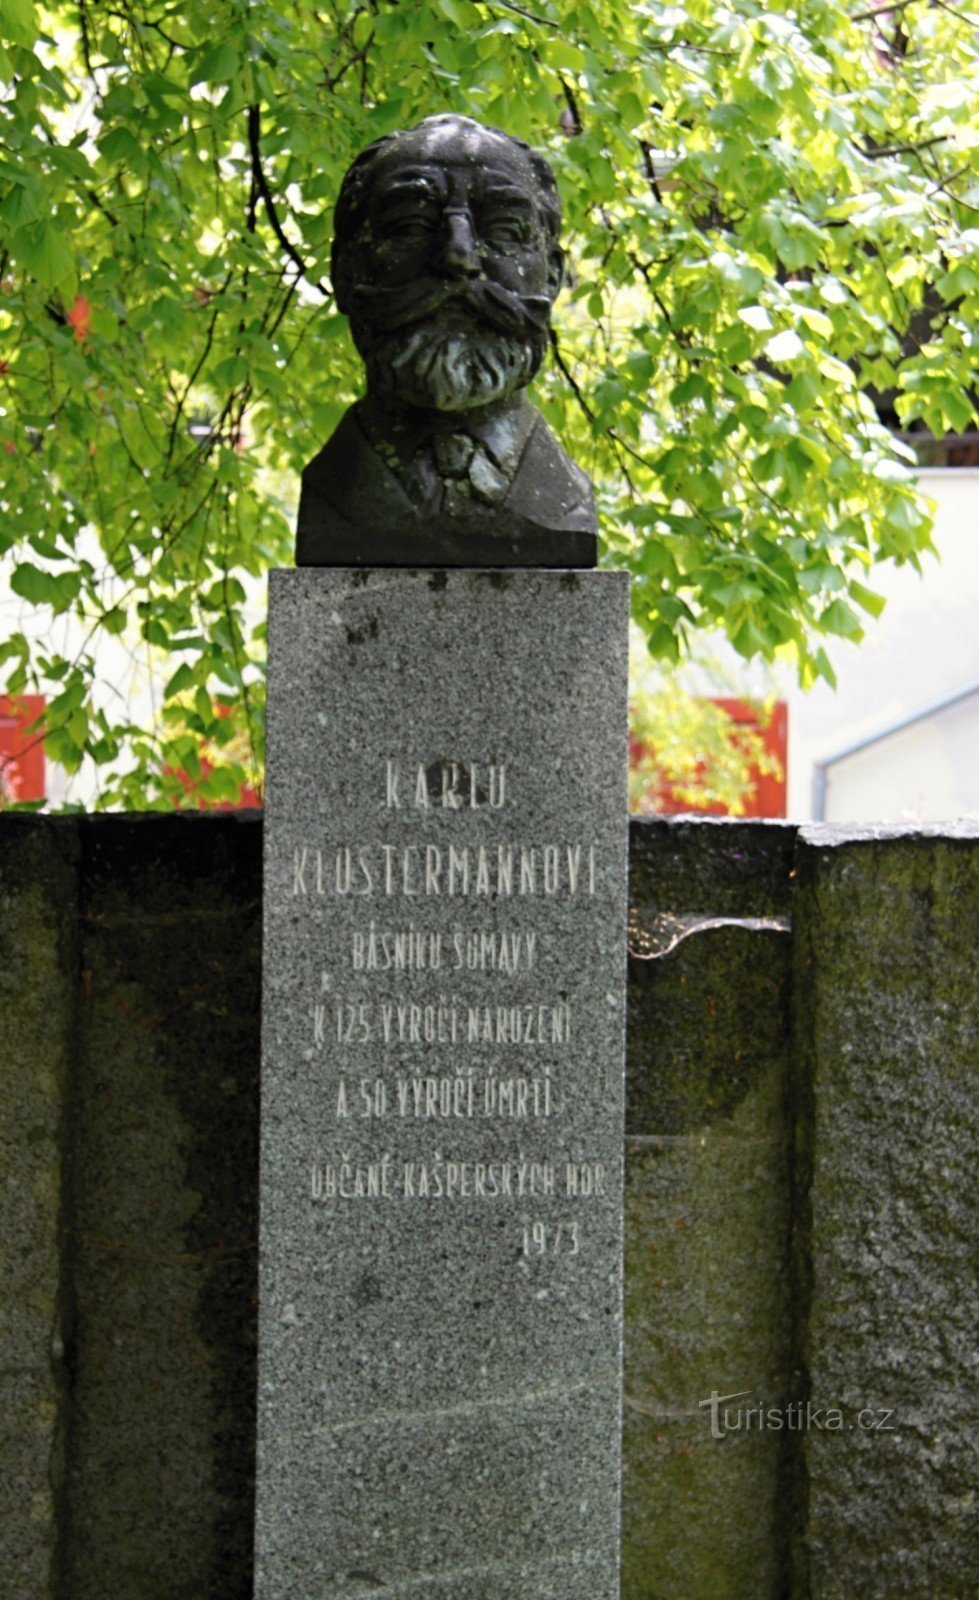 Monumentul lui Karel Klostrmann